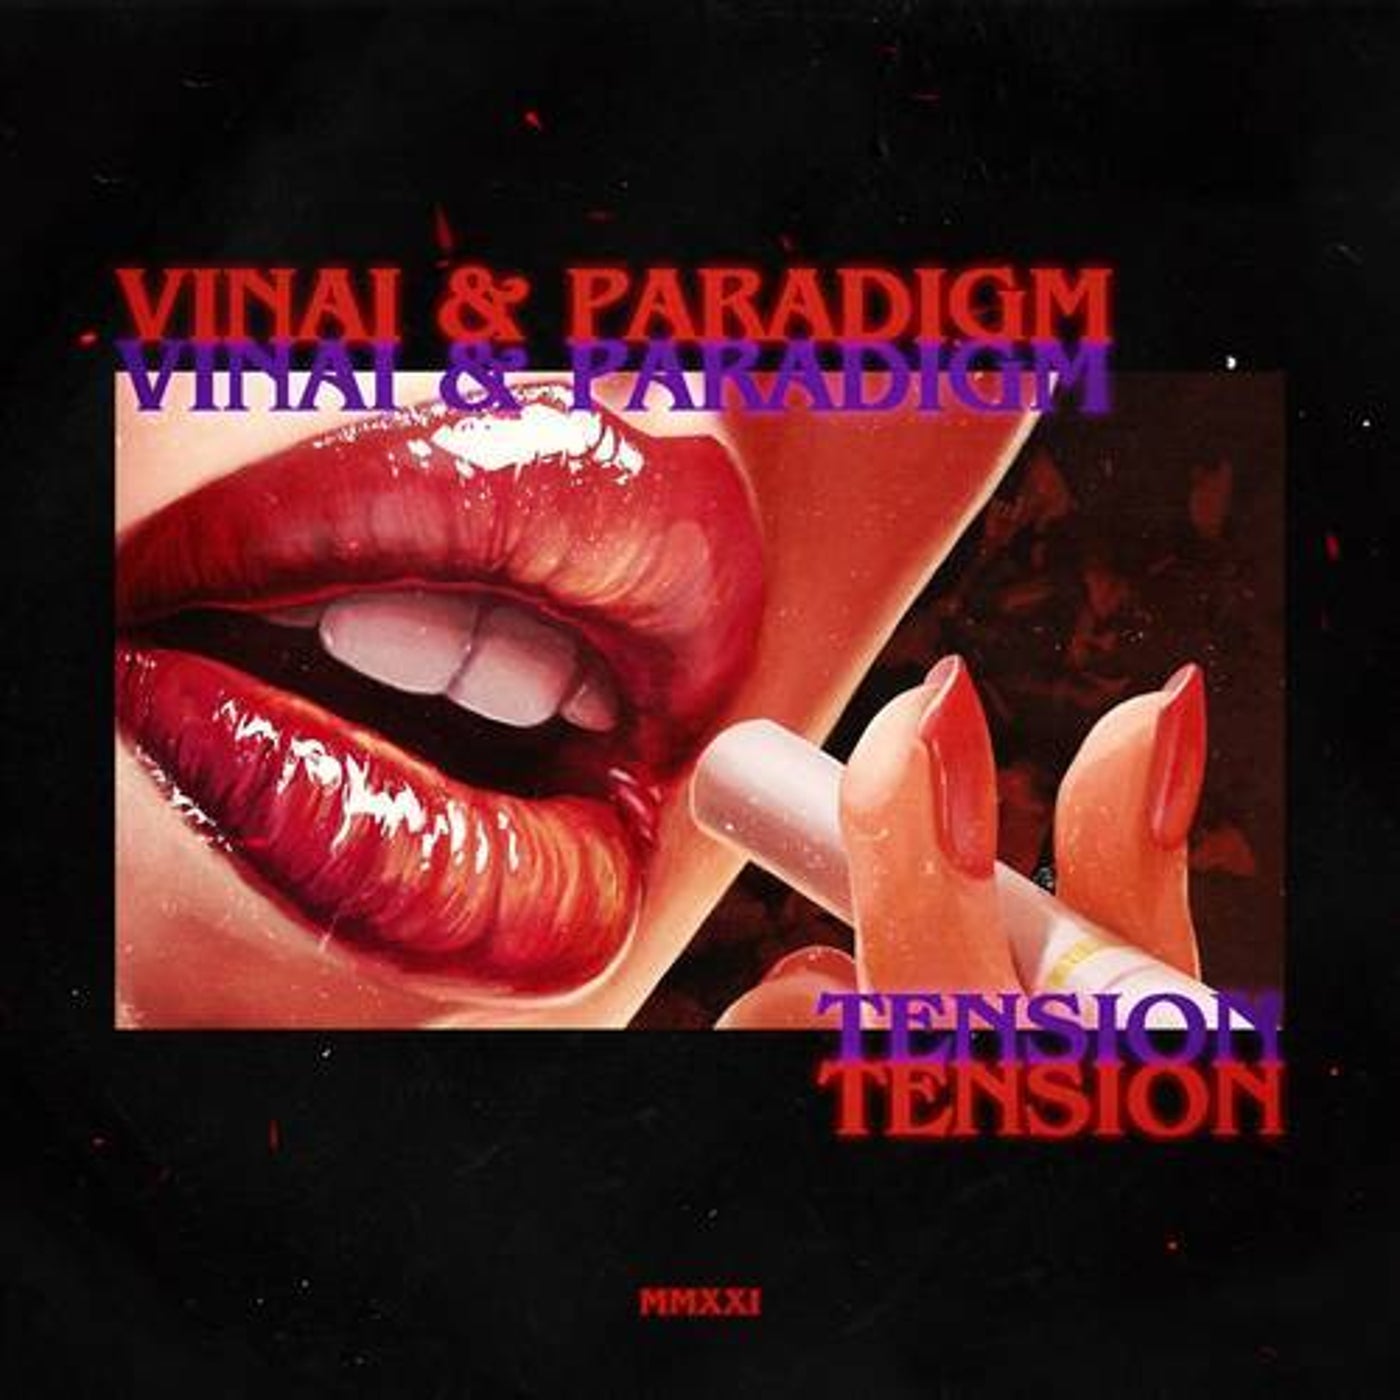 VINAI & Paradigm — Tension cover artwork